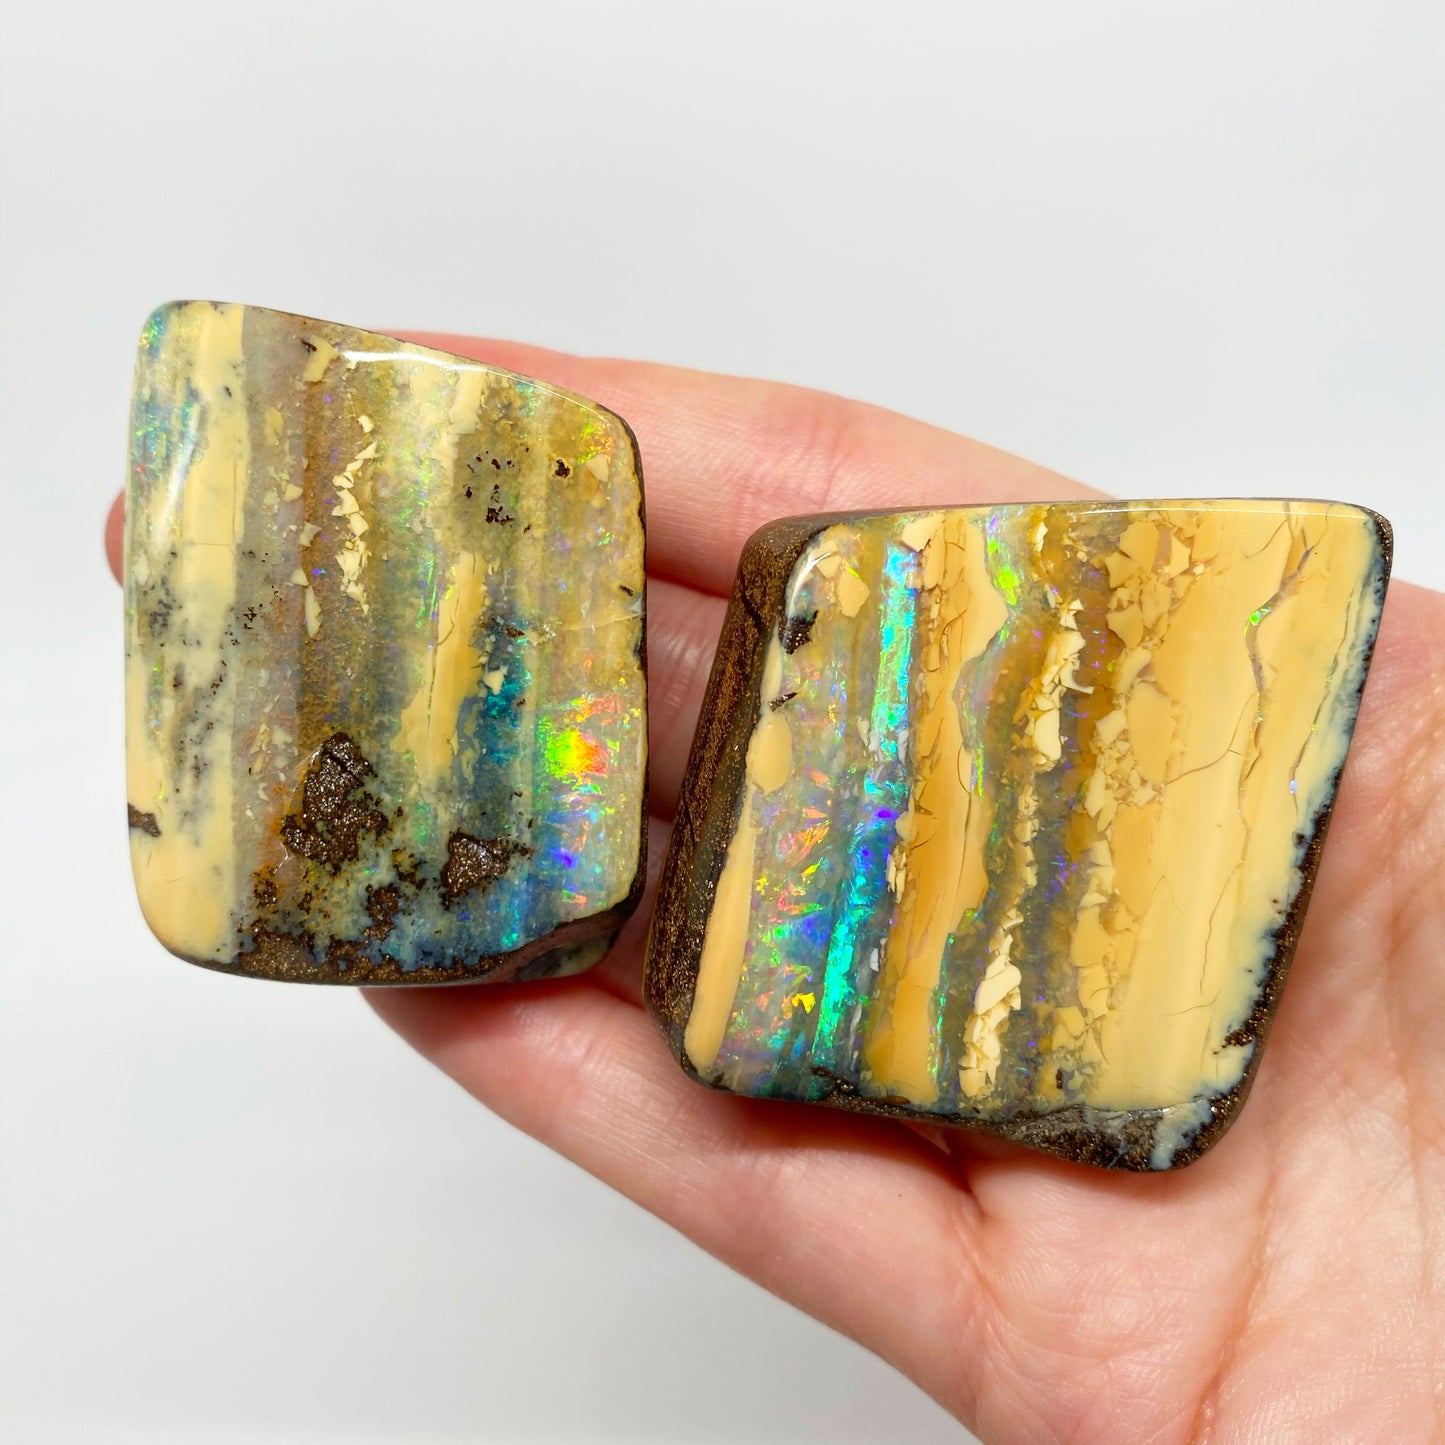 490 Ct rainbow boulder opal 'split' specimen pair